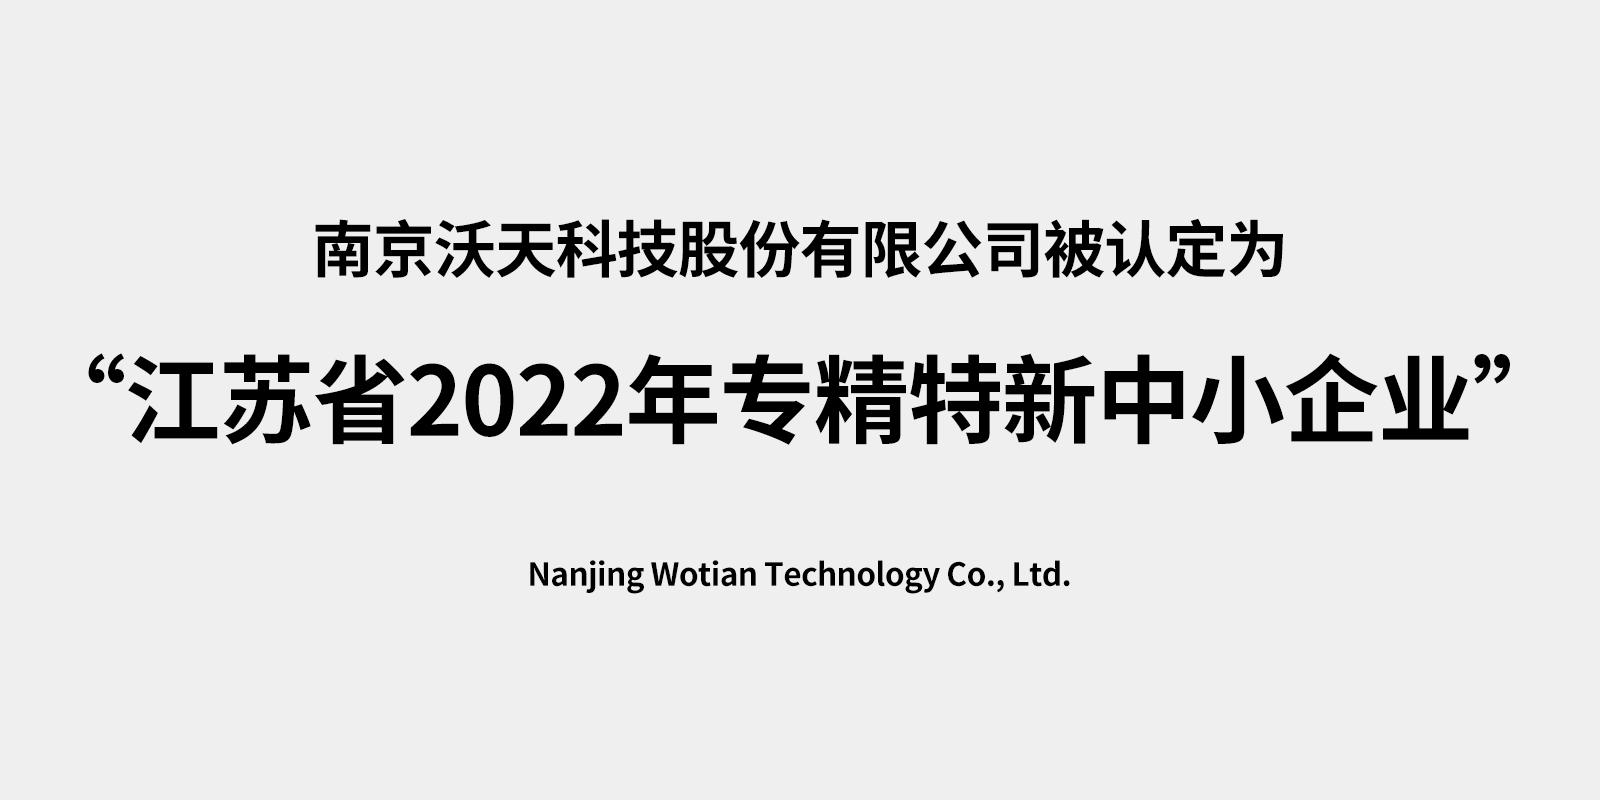 南京沃天科技股份有限公司被认定为 “江苏省2022年专精特新中小企业”